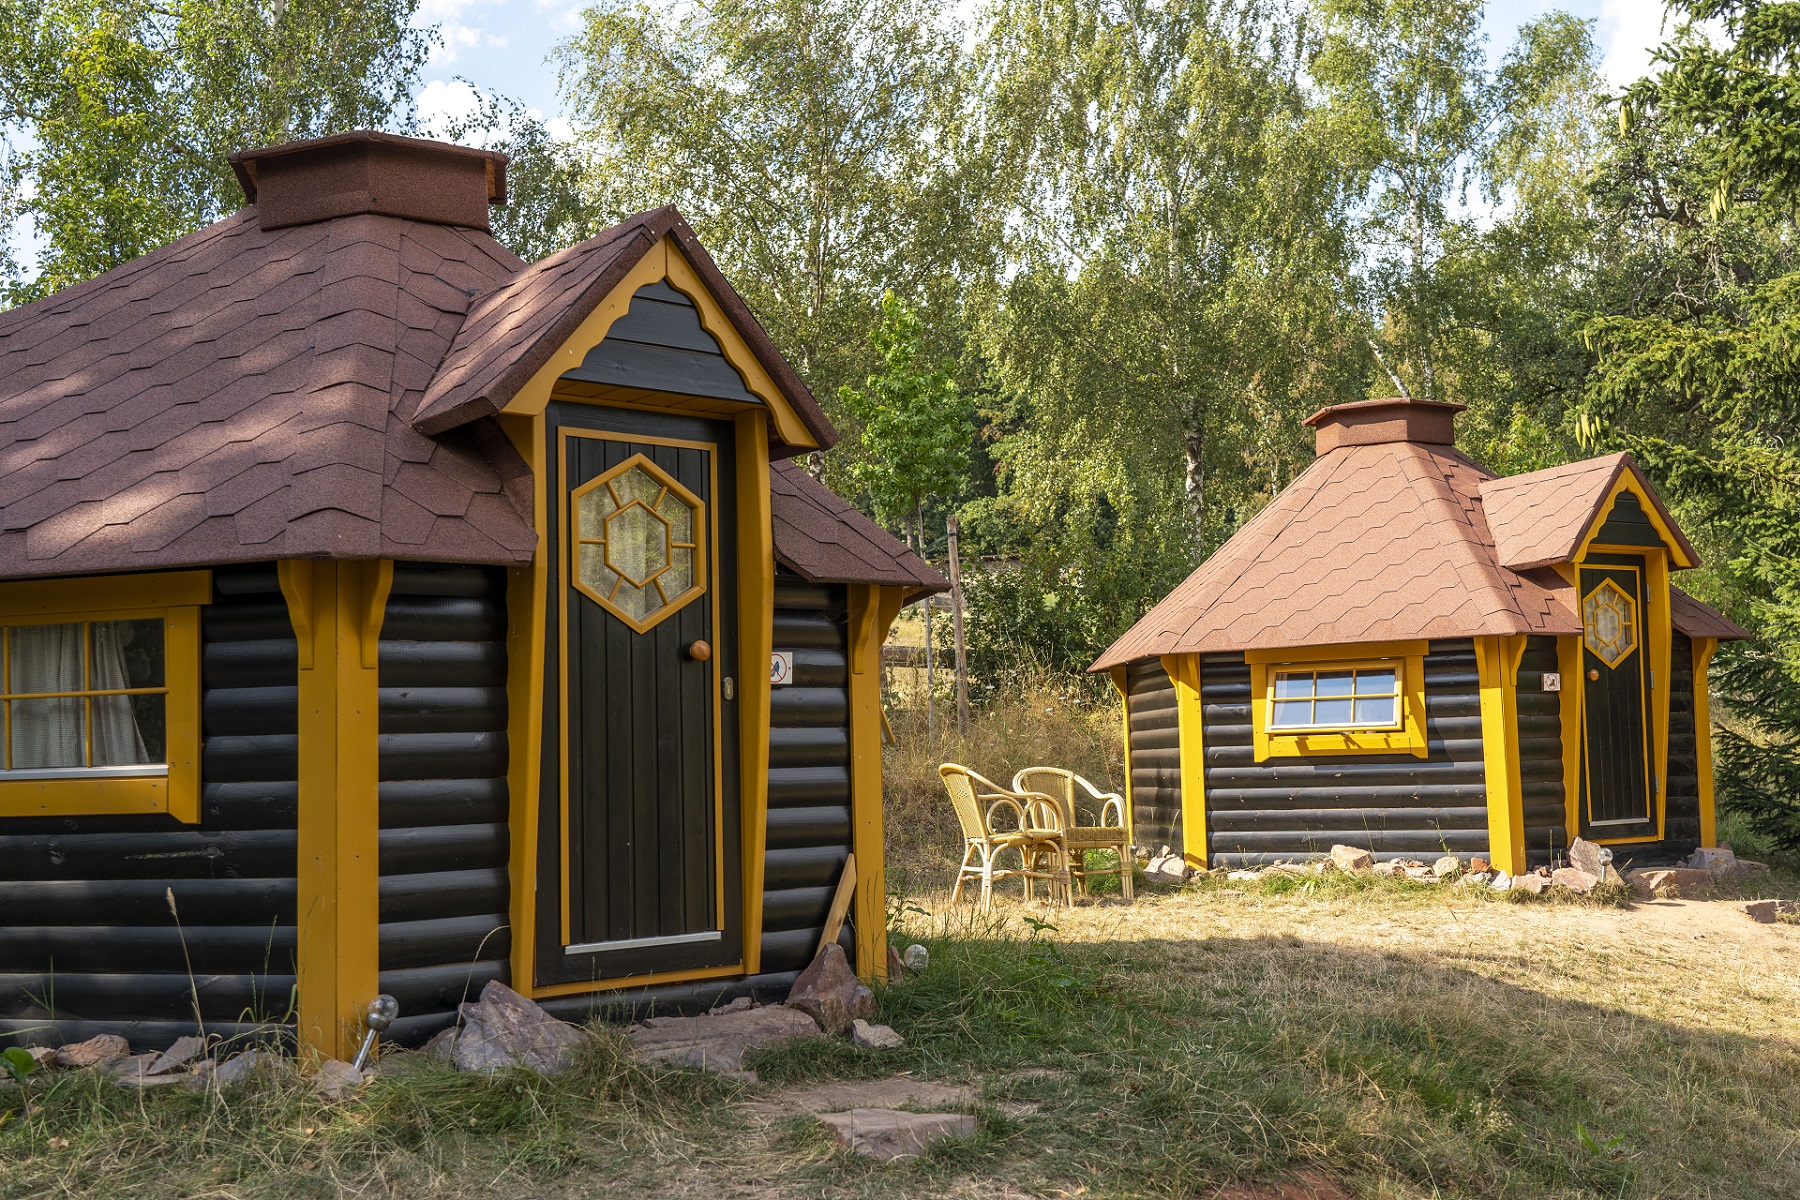 Zwei finnische Kota mit gelben Fenster- und Türrahmen. Sie dienen als Übernachtungsmöglichkeit auf dem Campingplatz.